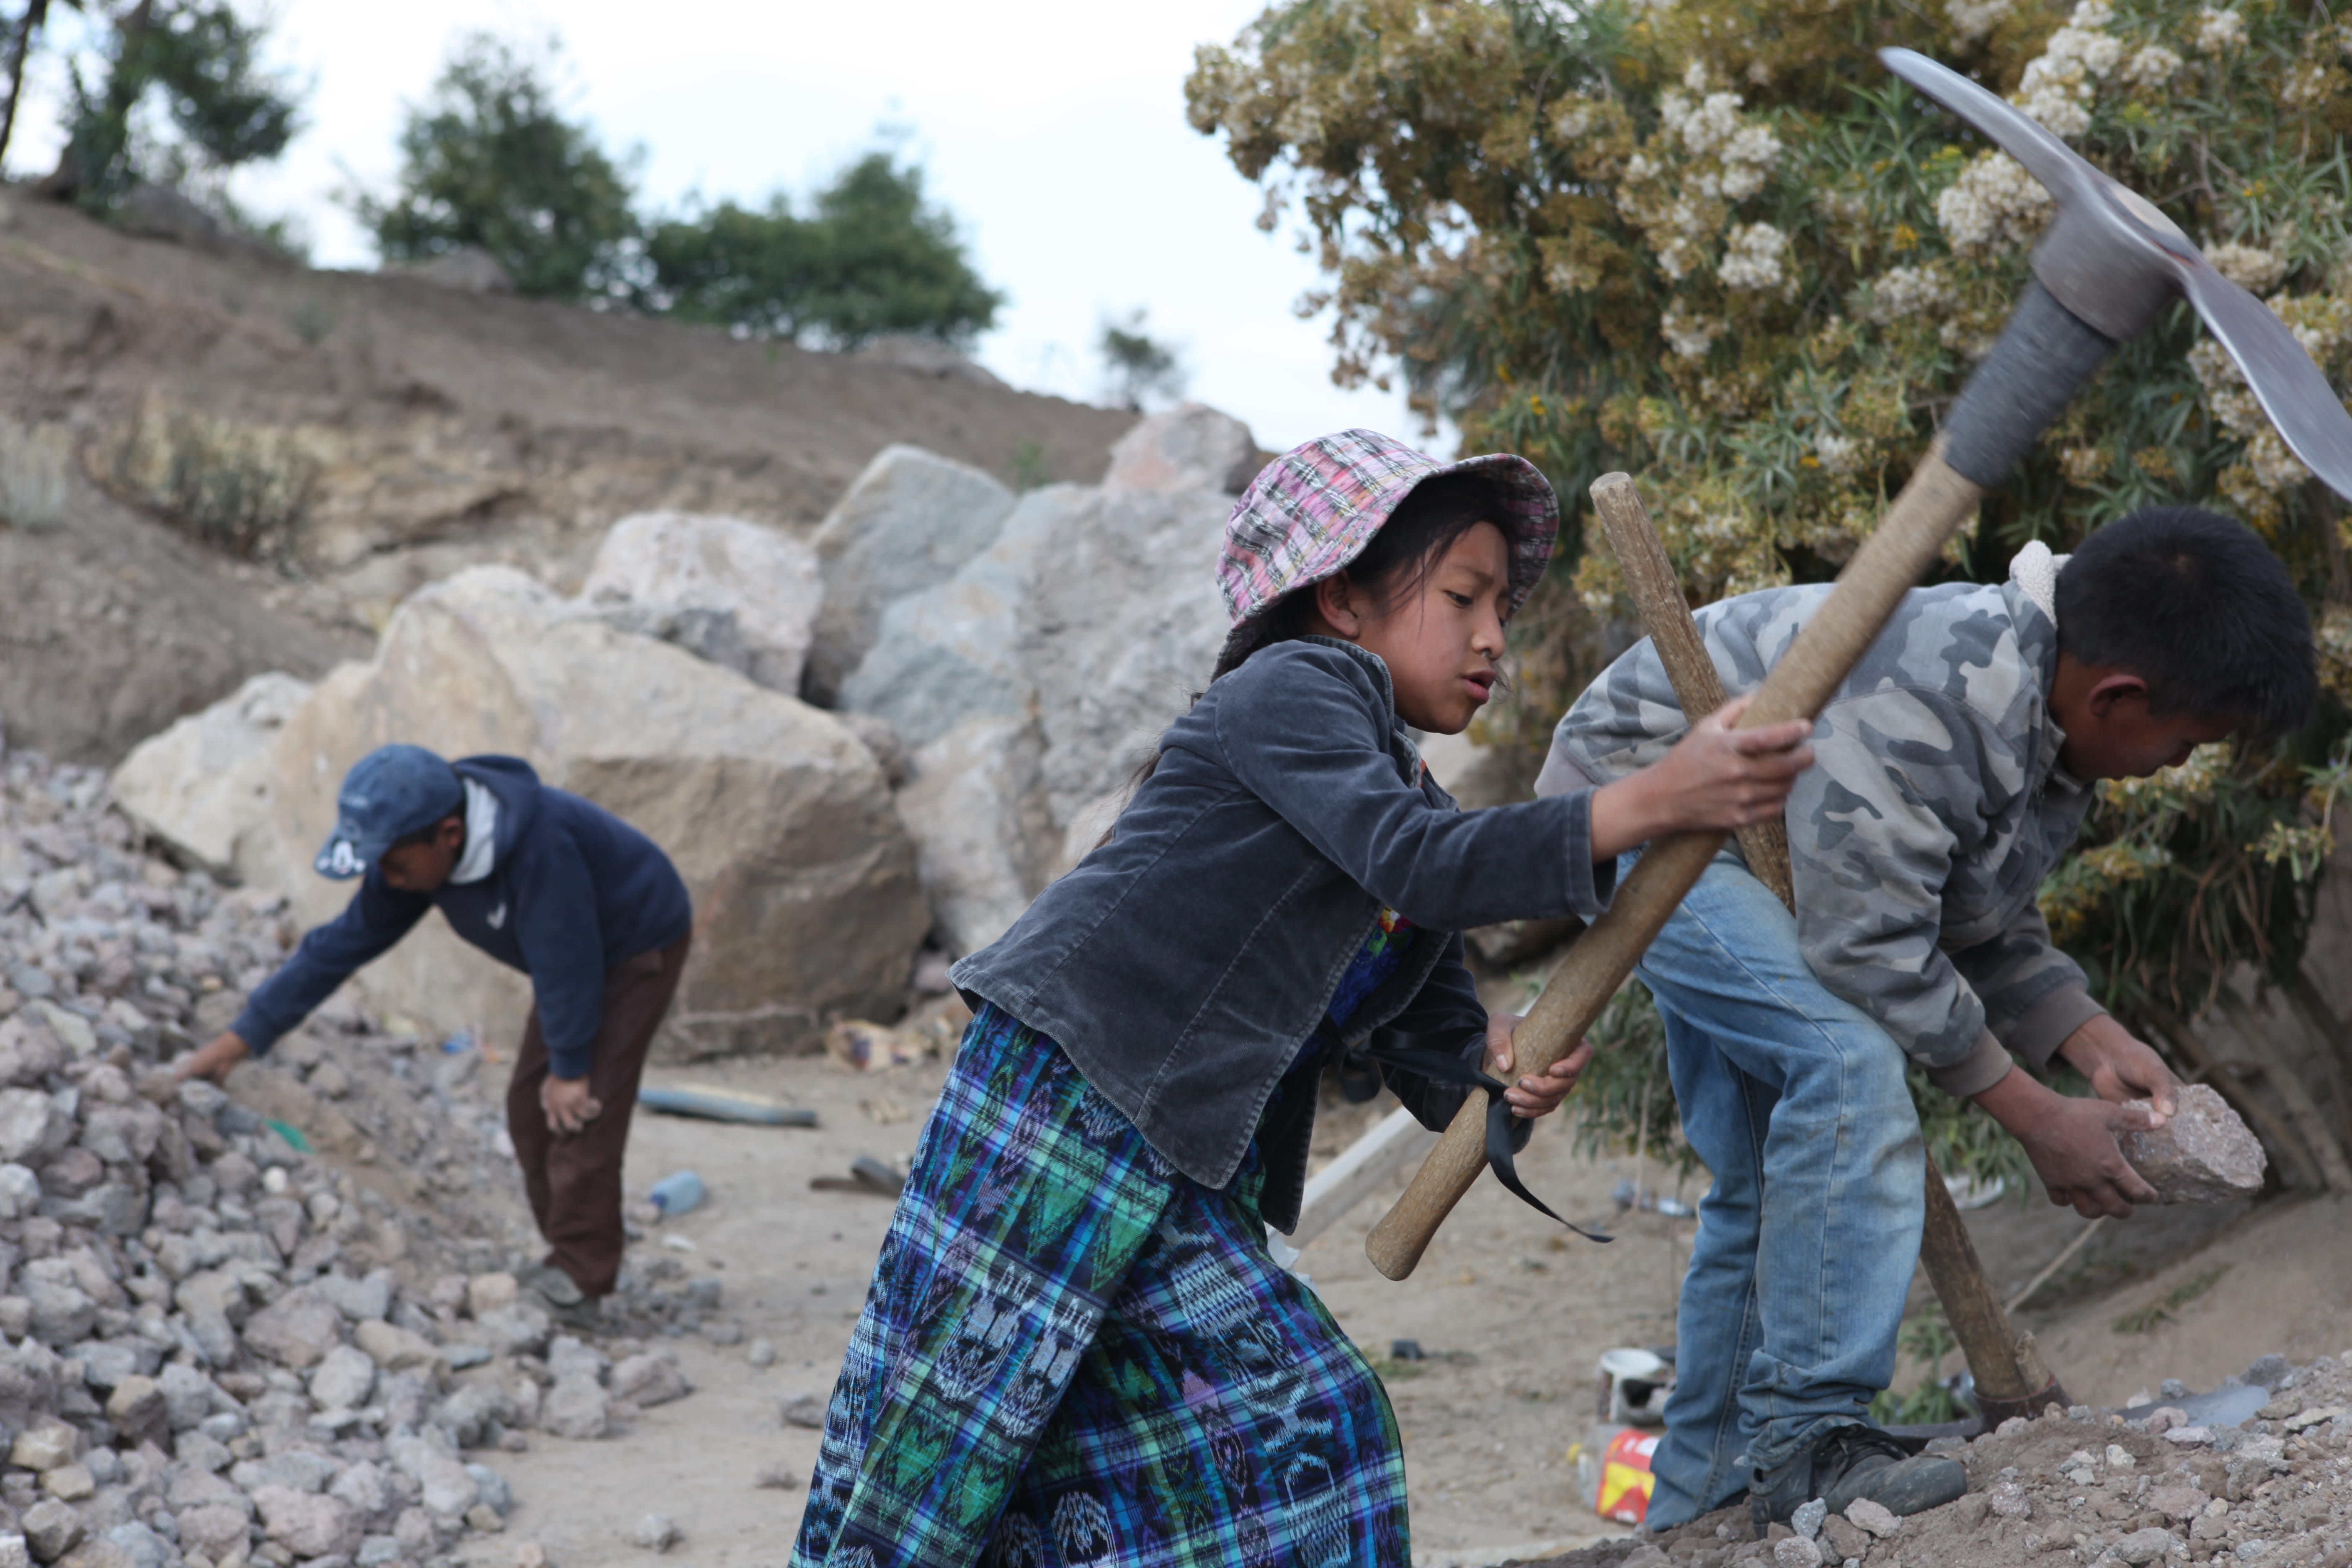 Ein kleines Mädchen hackt mit einer Spitzhacke in einem Steinbruch in Guatemala Steine. (Quelle: Malte Pfau)